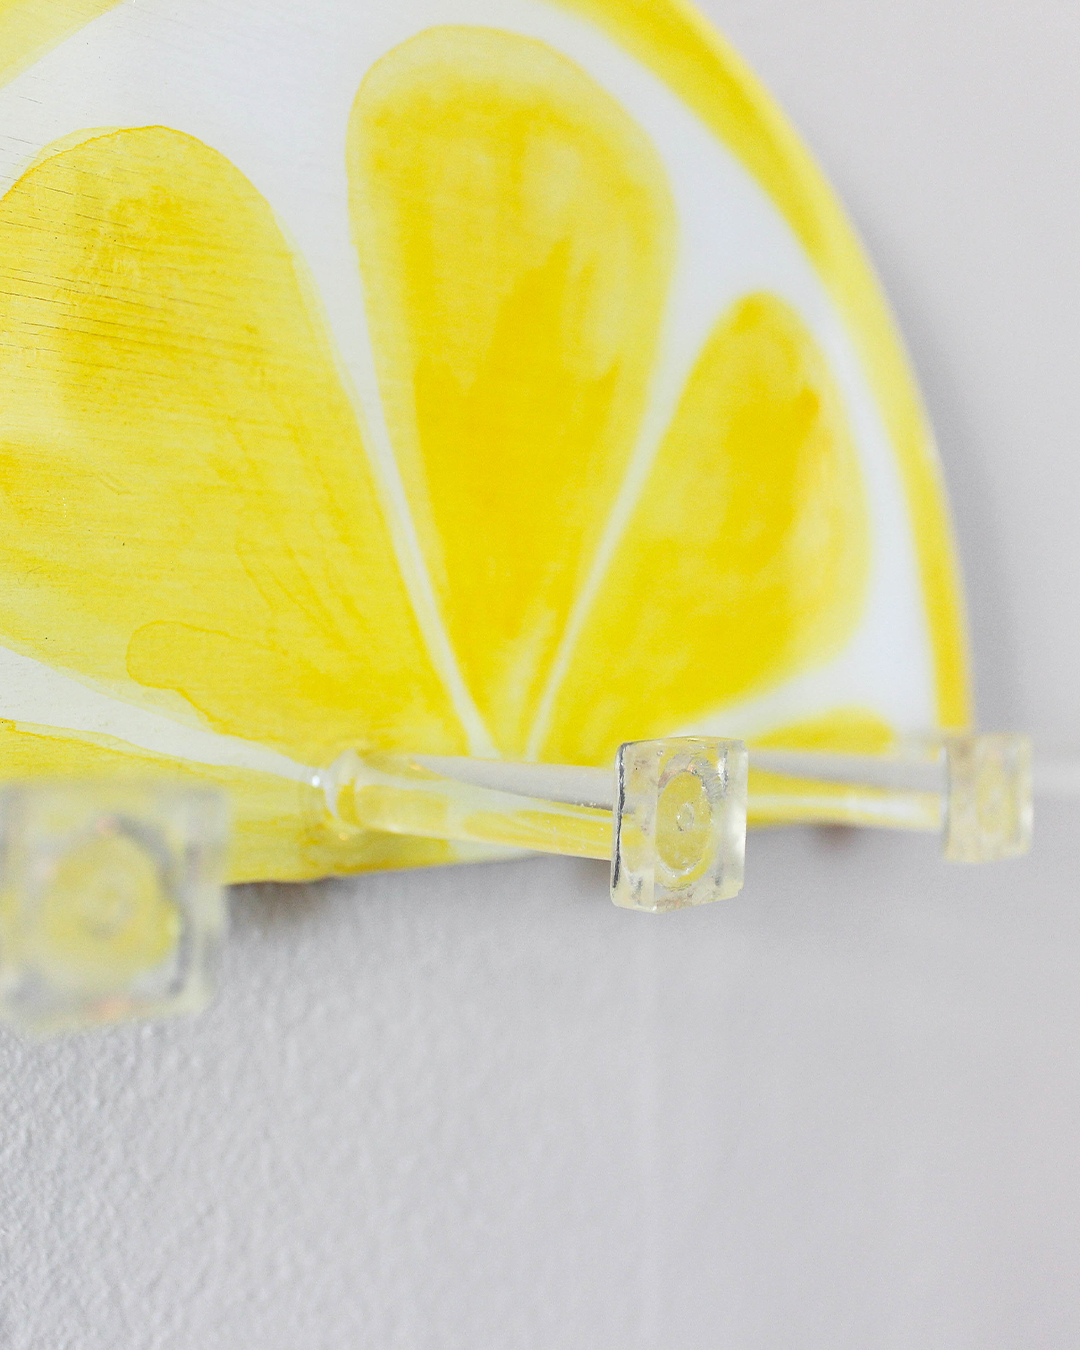 Artisanal lemon slice key holder, blending functionality with a pop of color for modern home decor